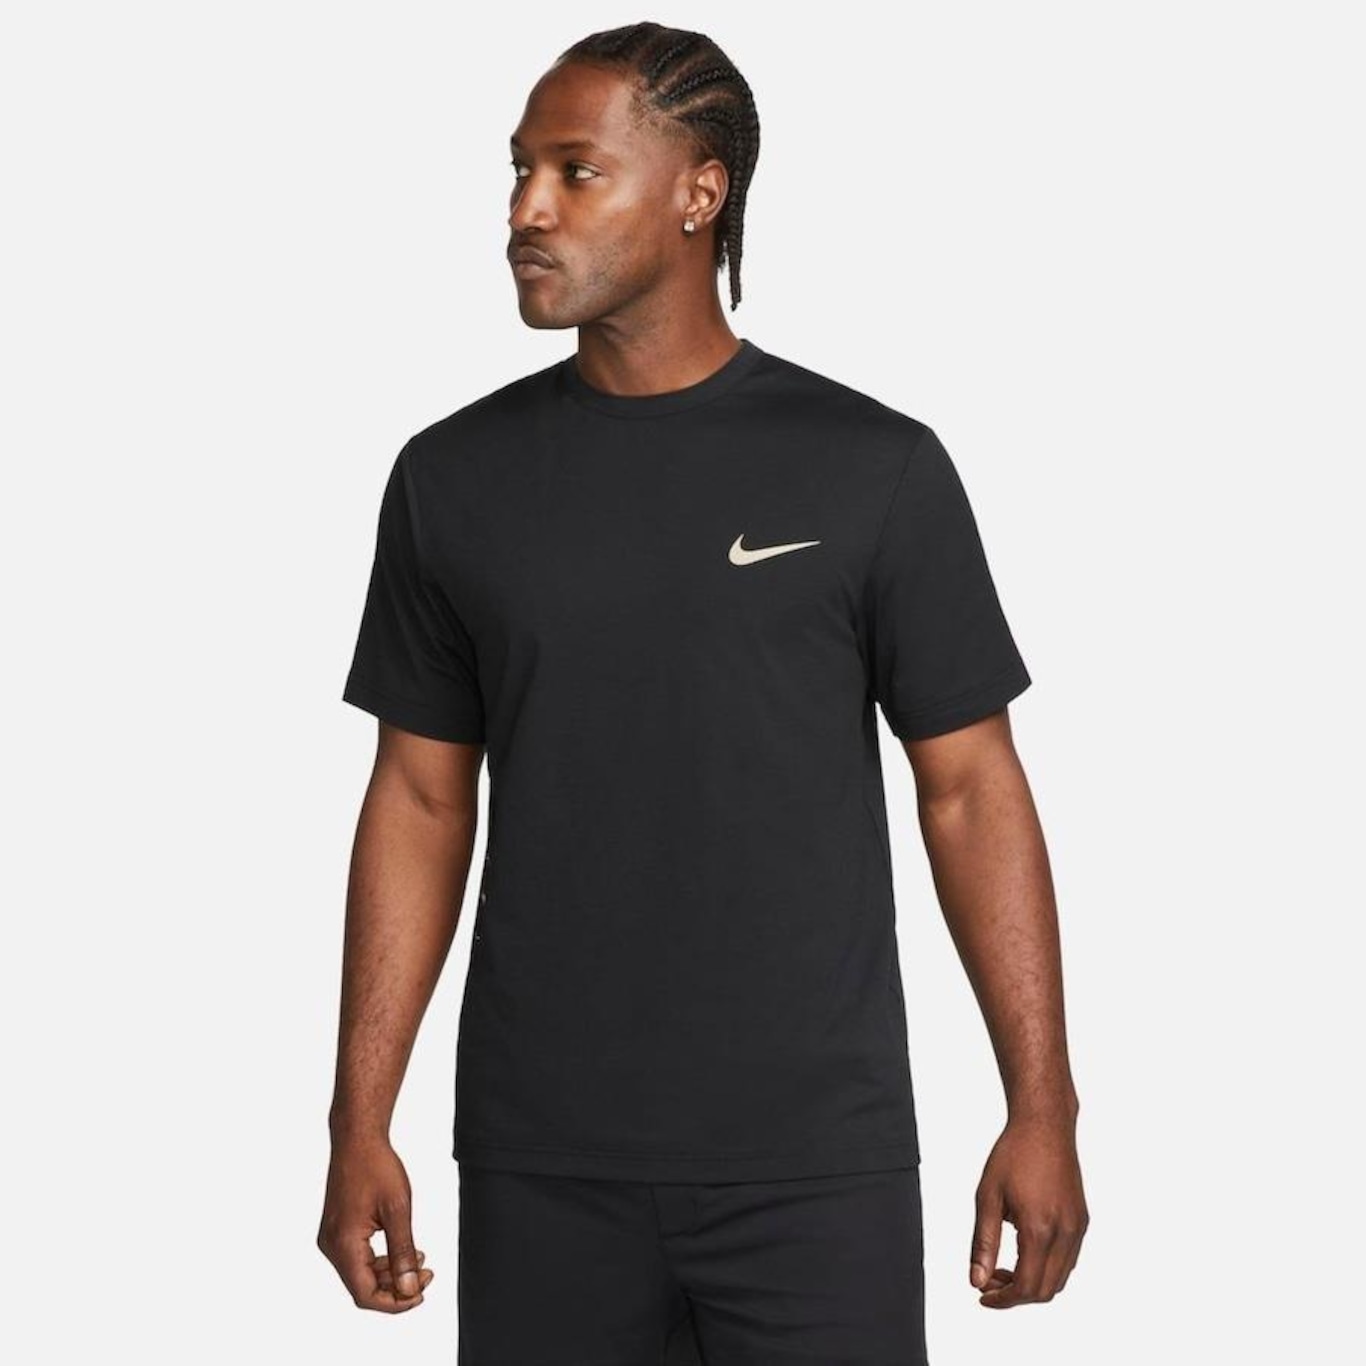 Camiseta Dry Fit Nike Preto - Primeira linha